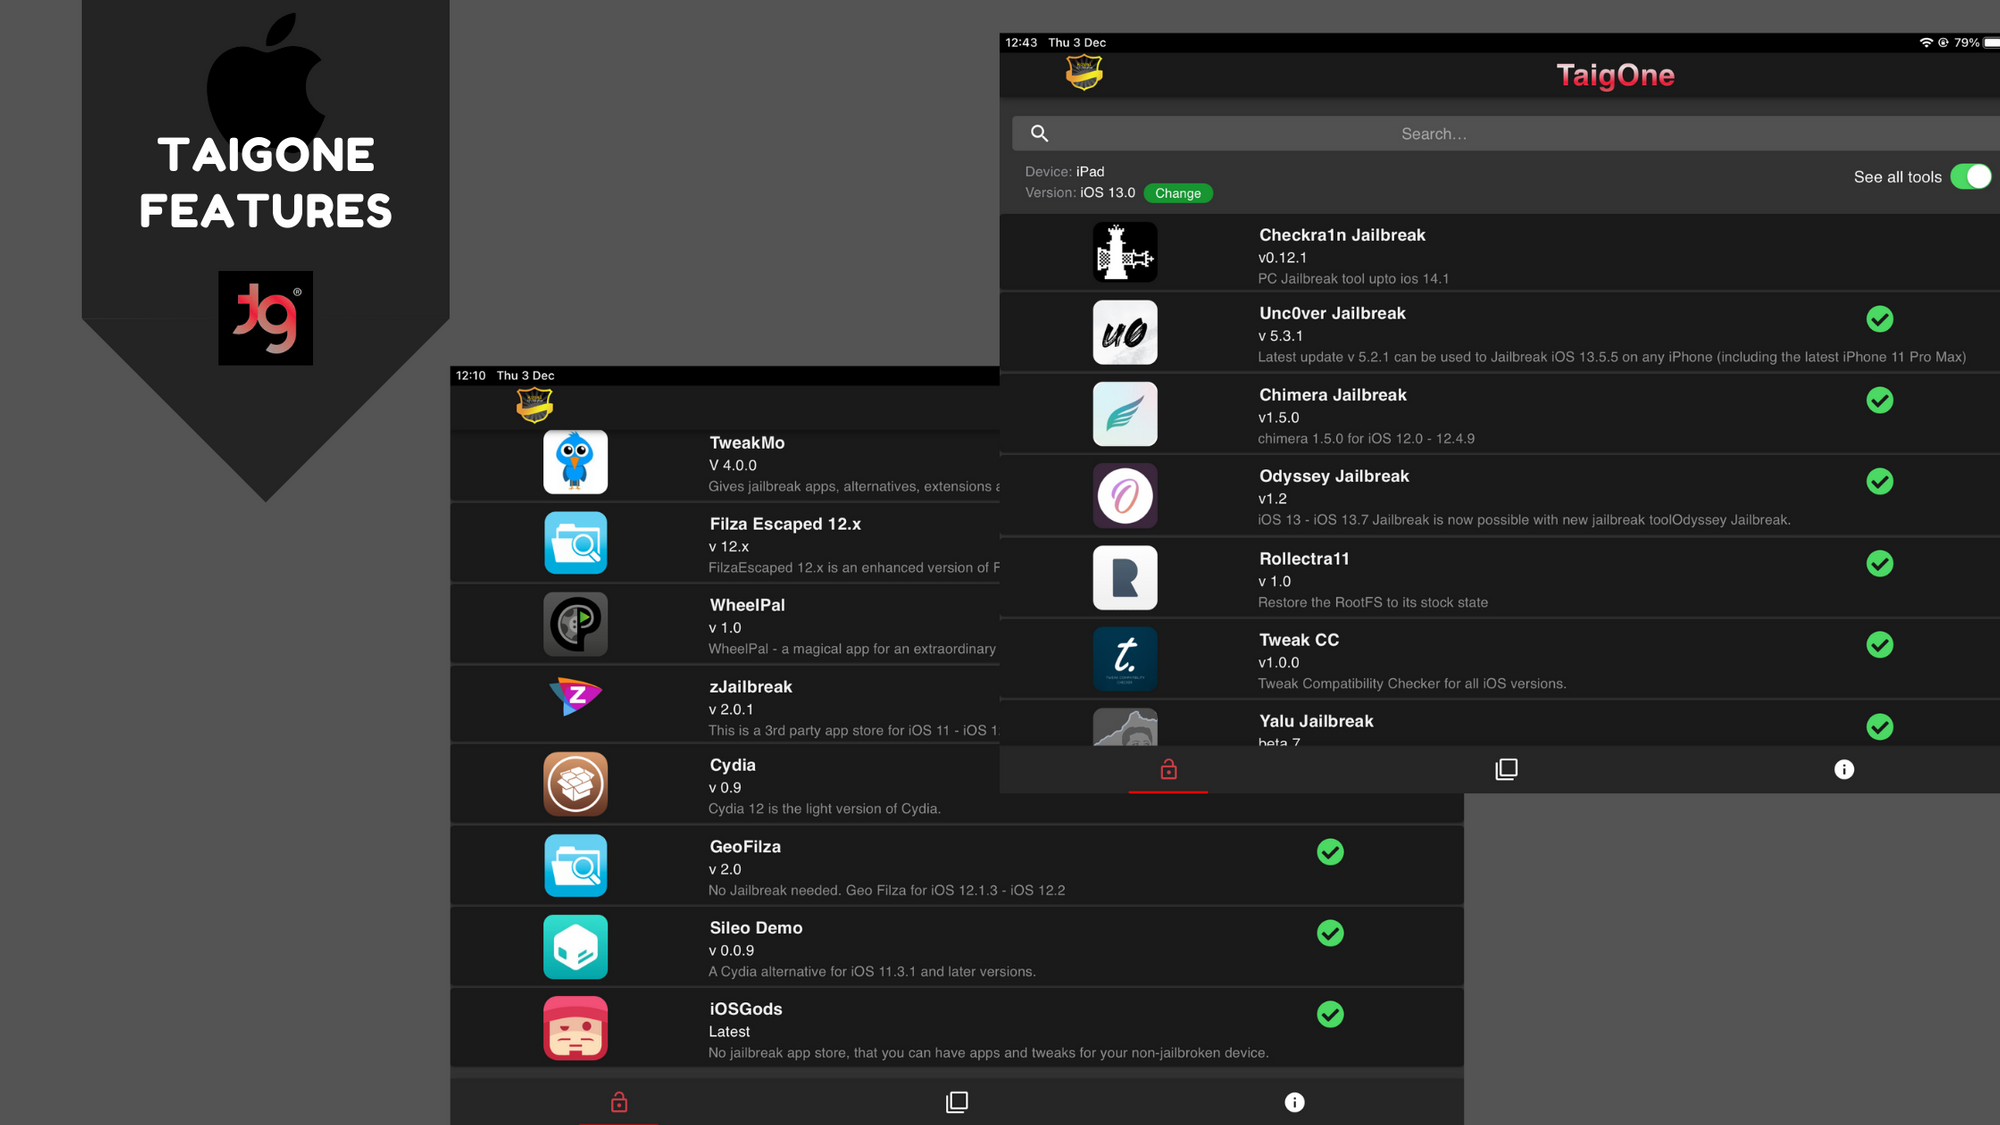 iOS Gods, Tutu app, zJailbreak, Tweak CC, iWish and many other jailbreak tweaks